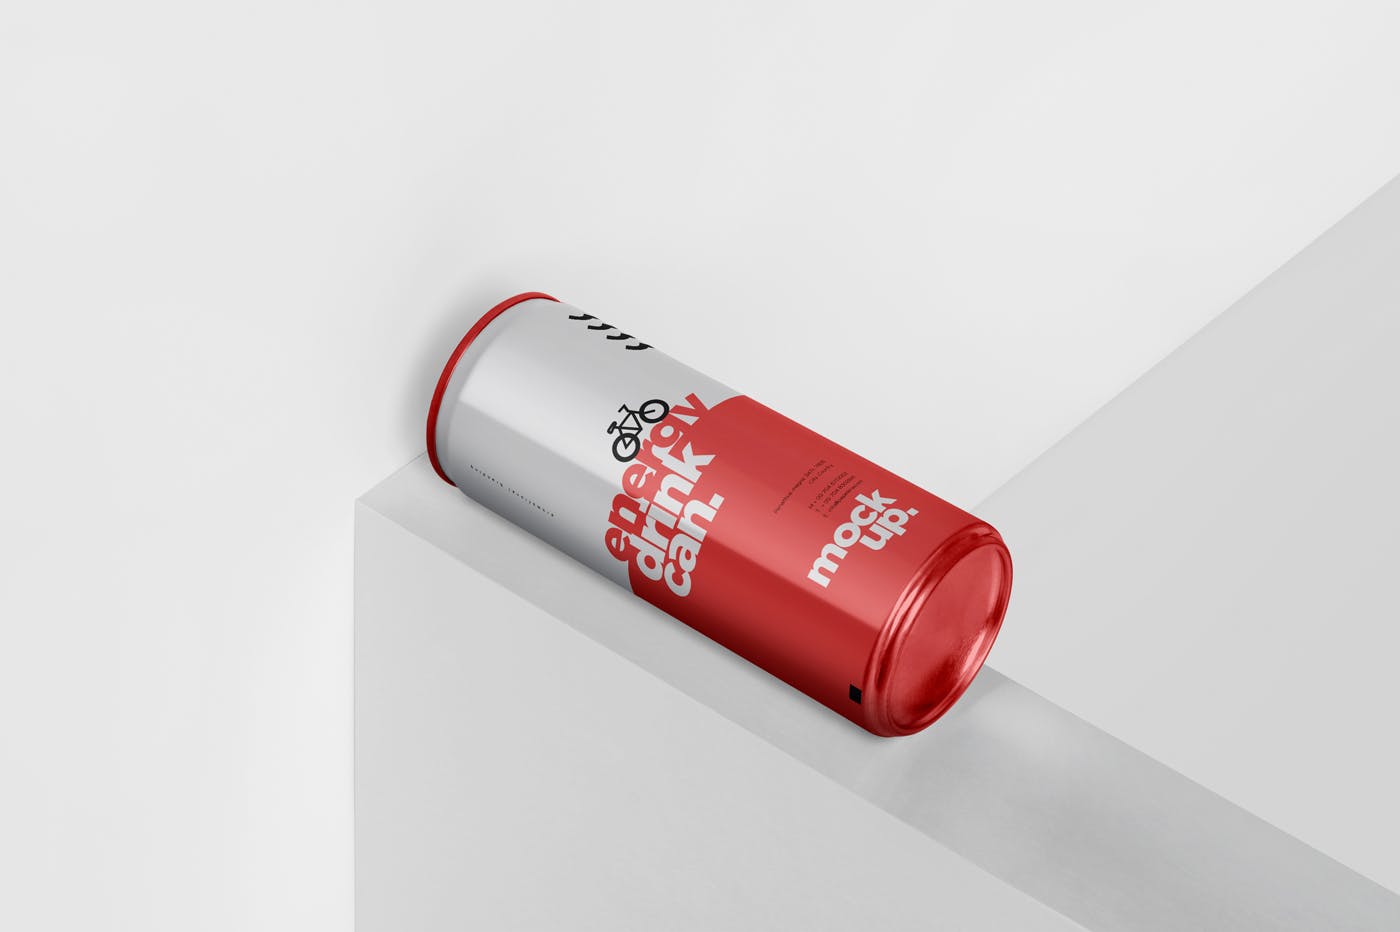 能量饮料易拉罐罐头外观设计素材库精选模板 Energy Drink Can Mock-Up – 250 ml插图(4)